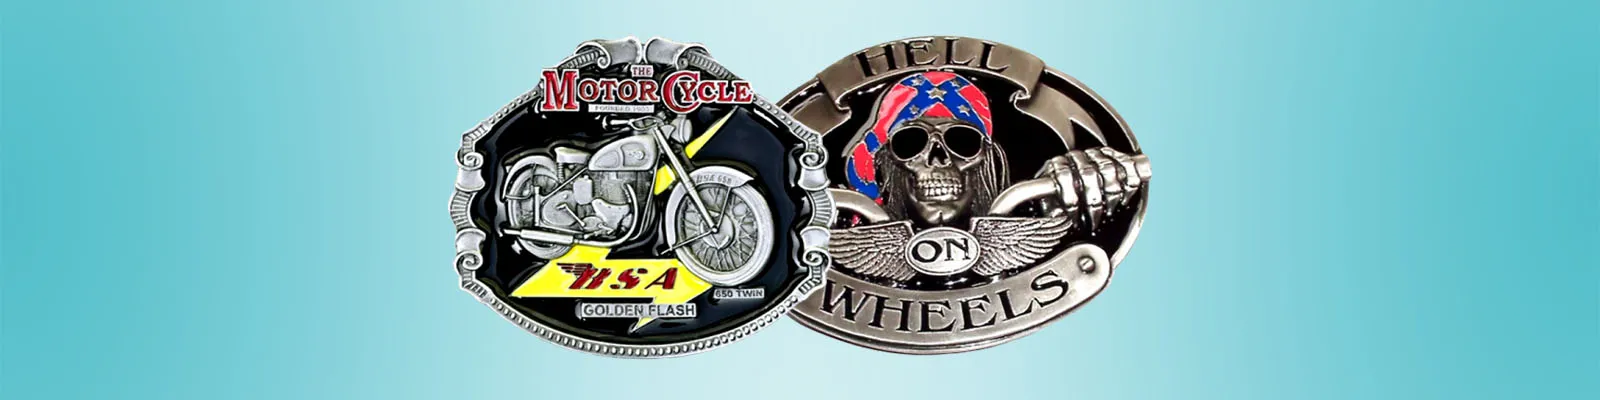 Biker & Motorcycle Belt Buckles Category Image | Buckle.de